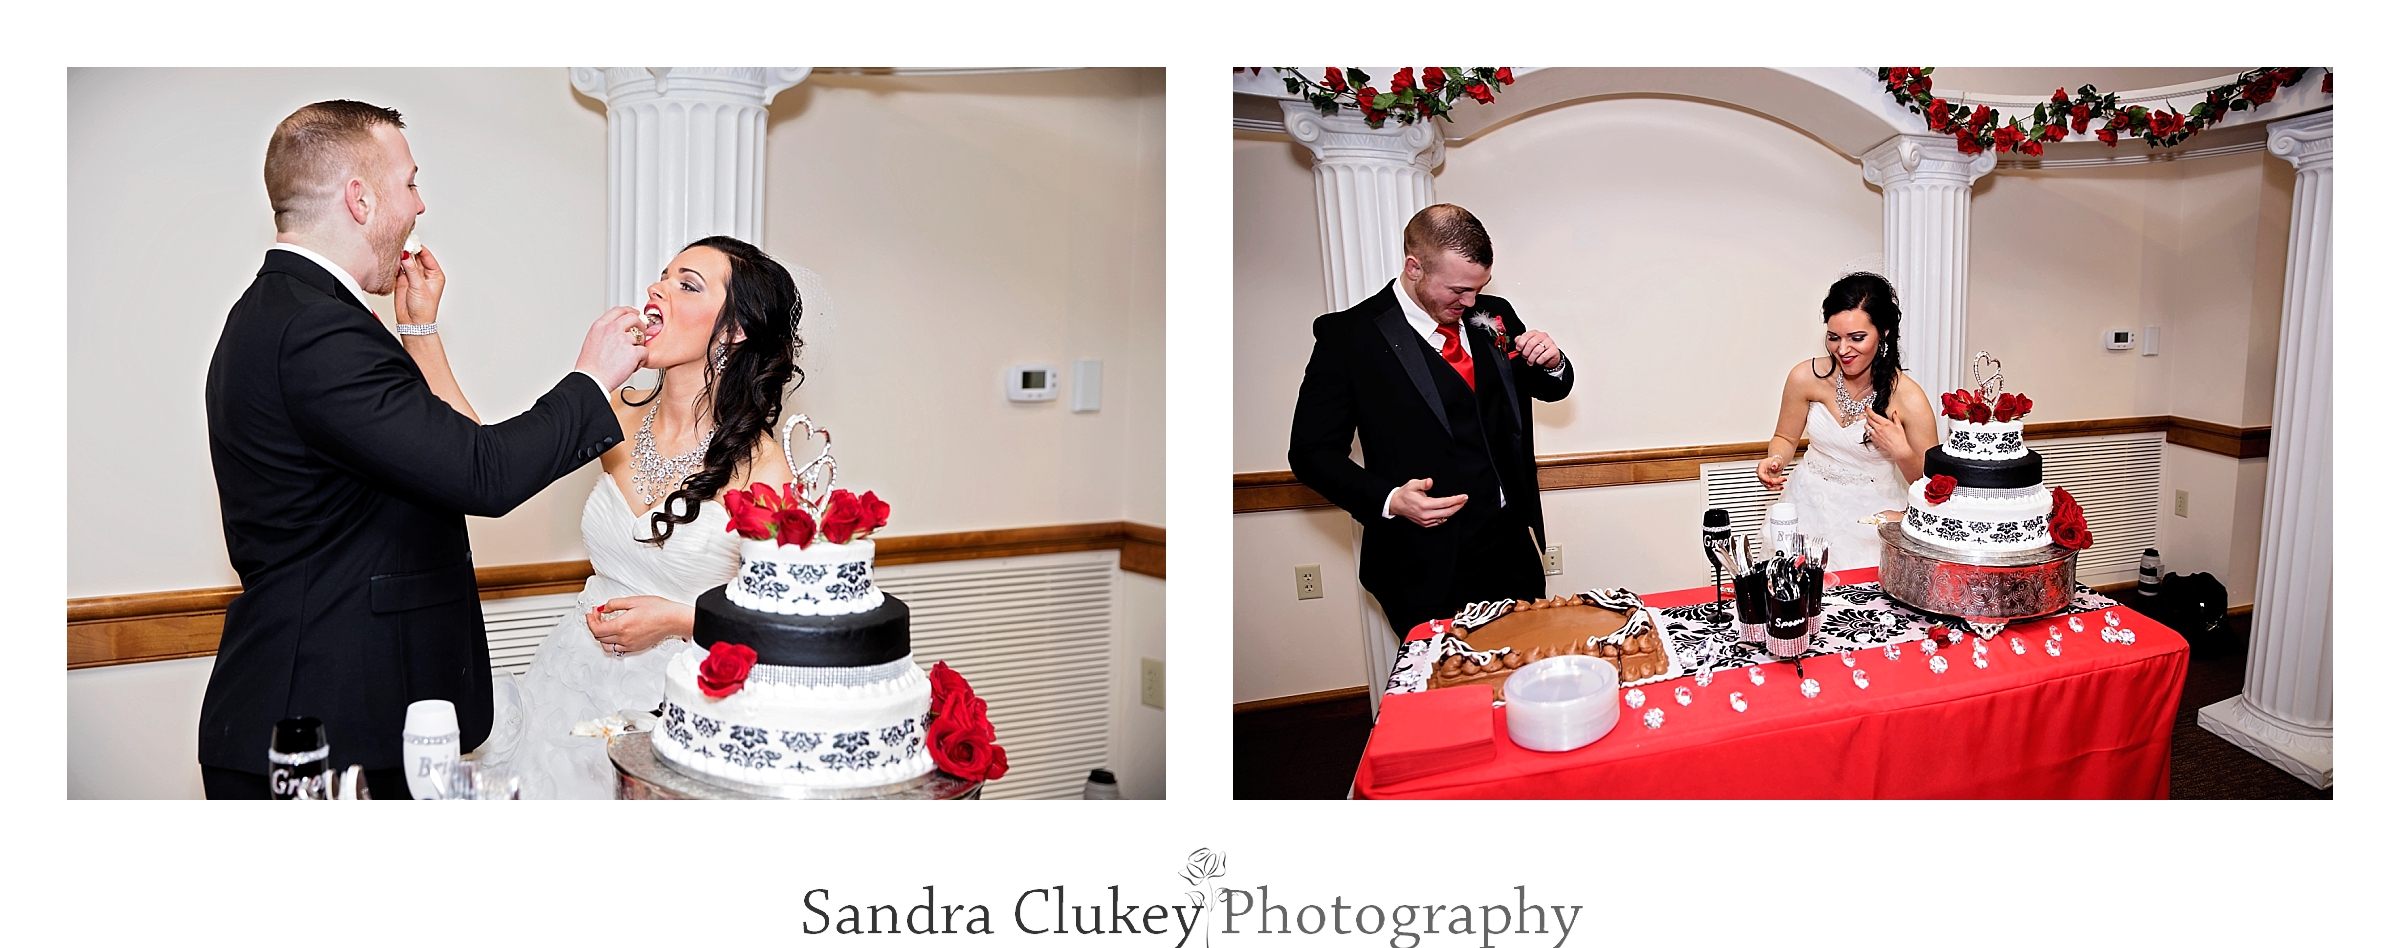 Happy couple share he cake